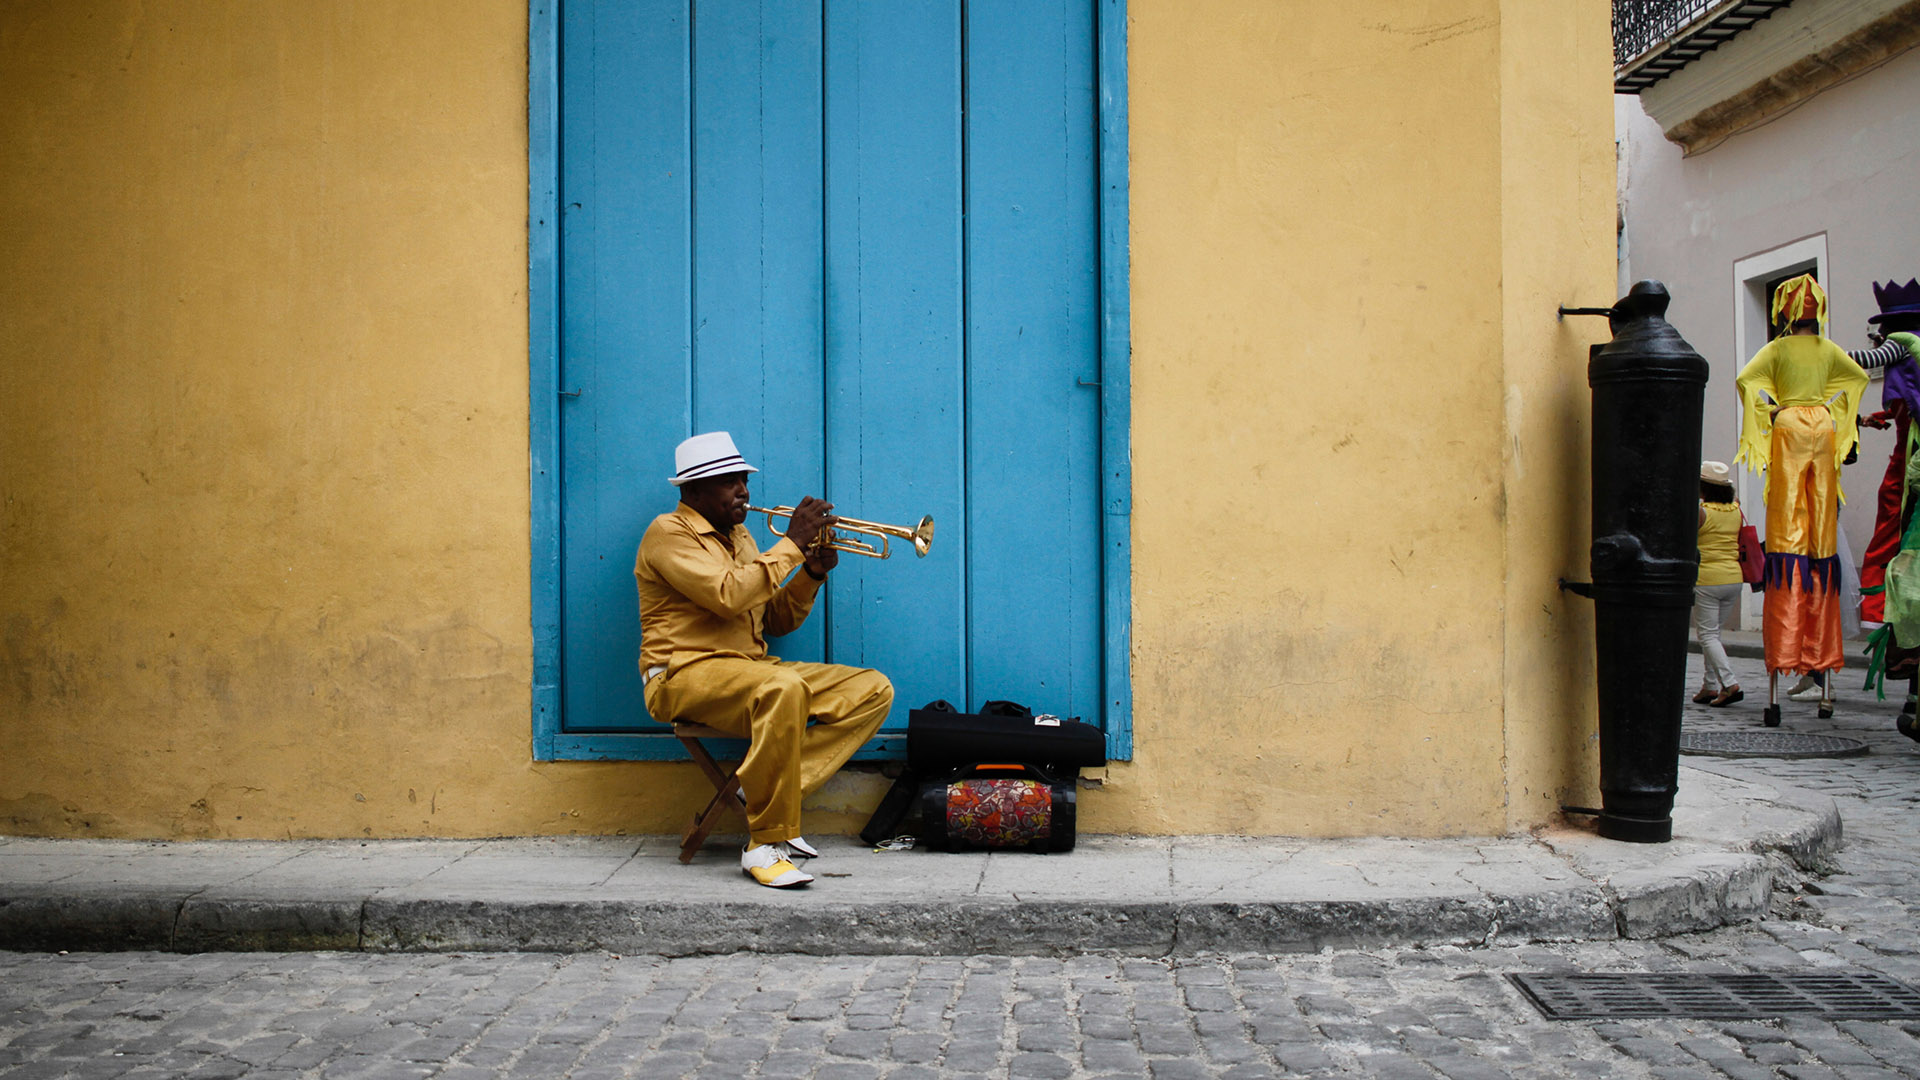 another street musician in havana